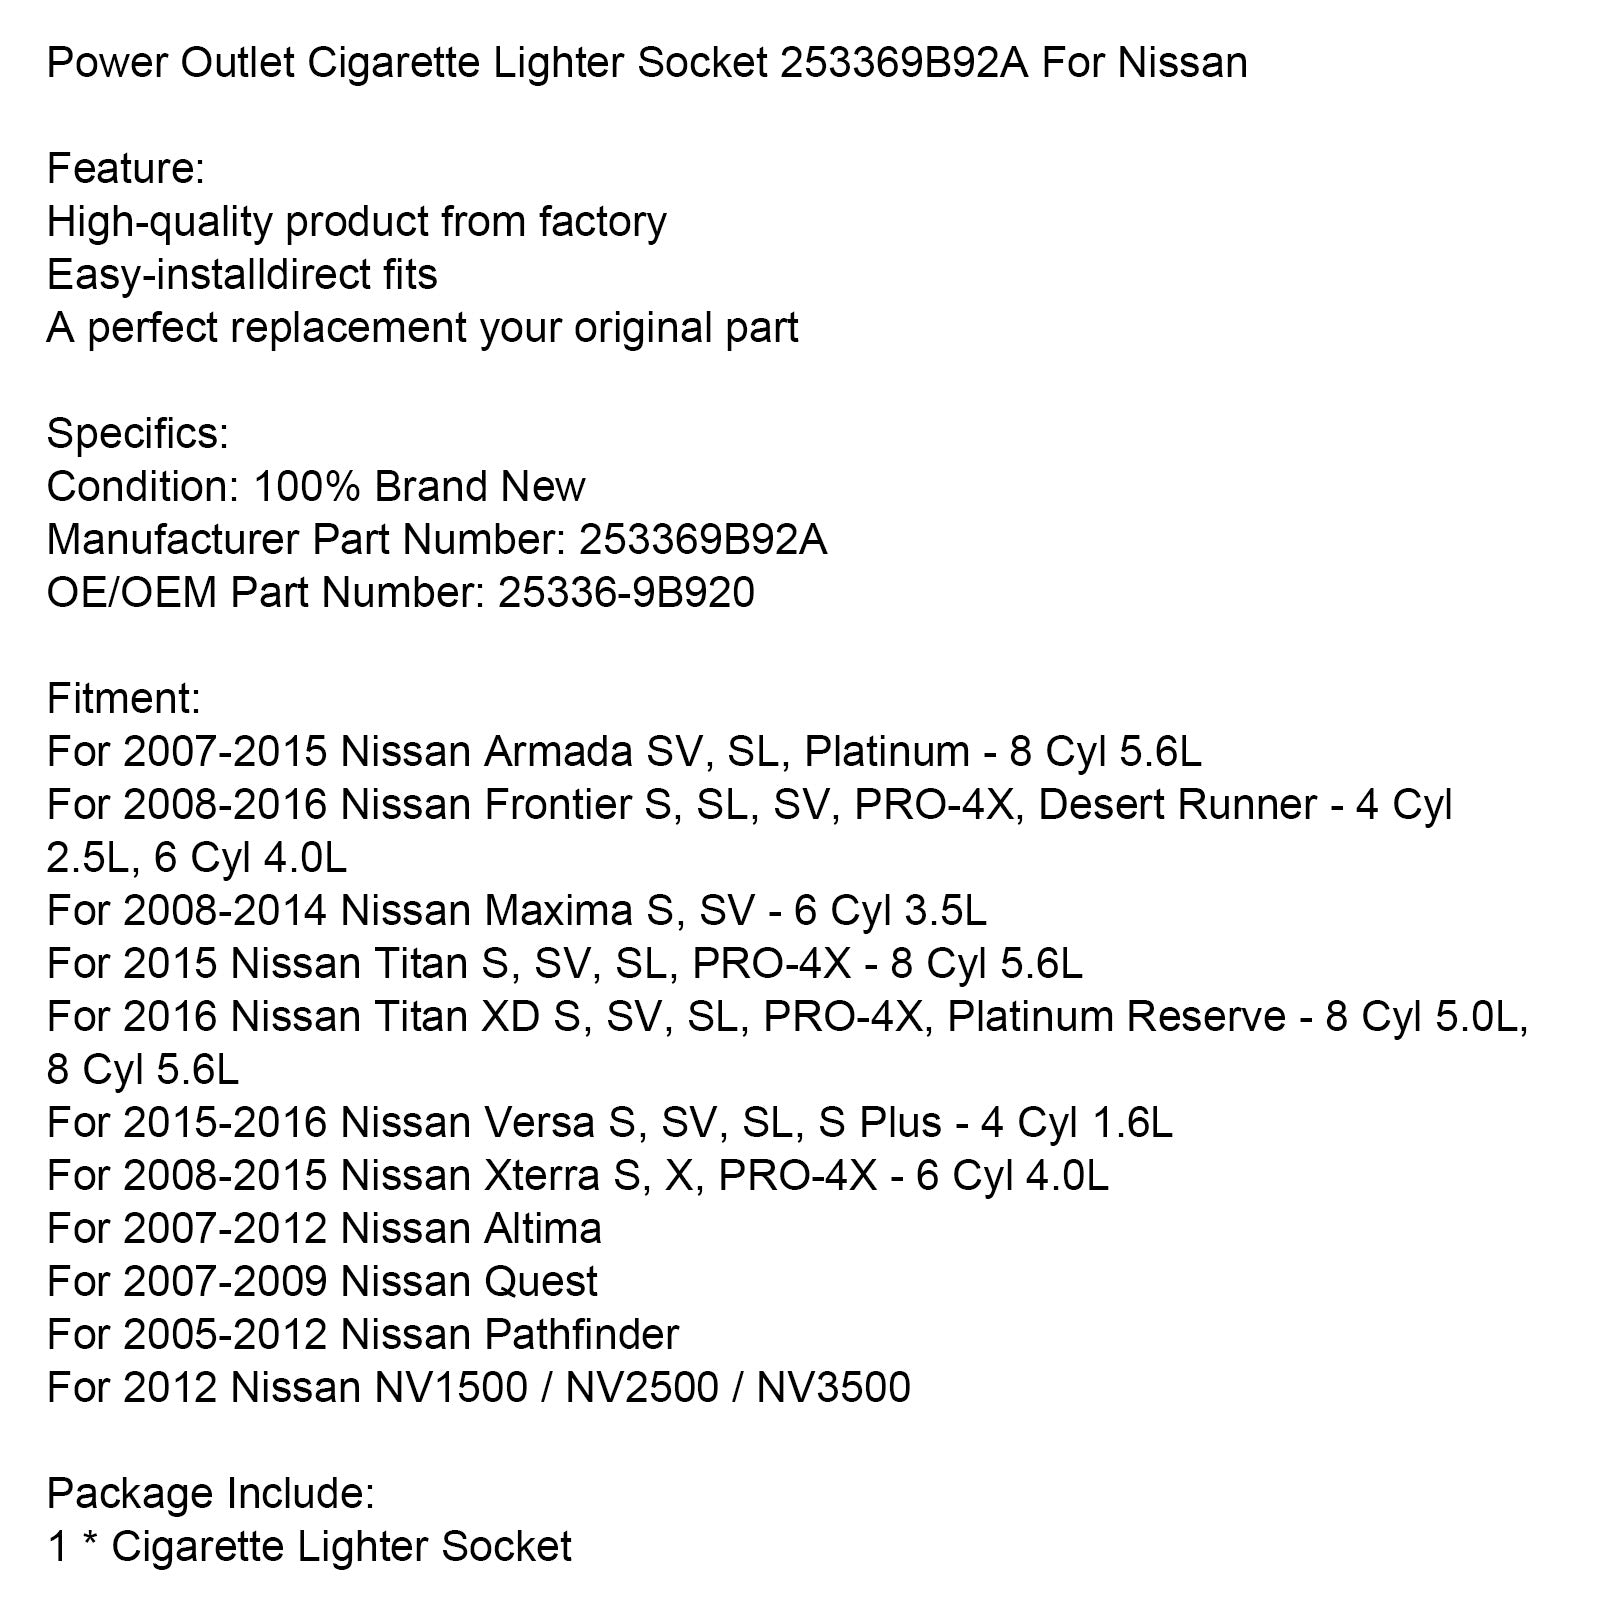 Power Outlet Cigarette Lighter Socket 253369B92A pour Nissan